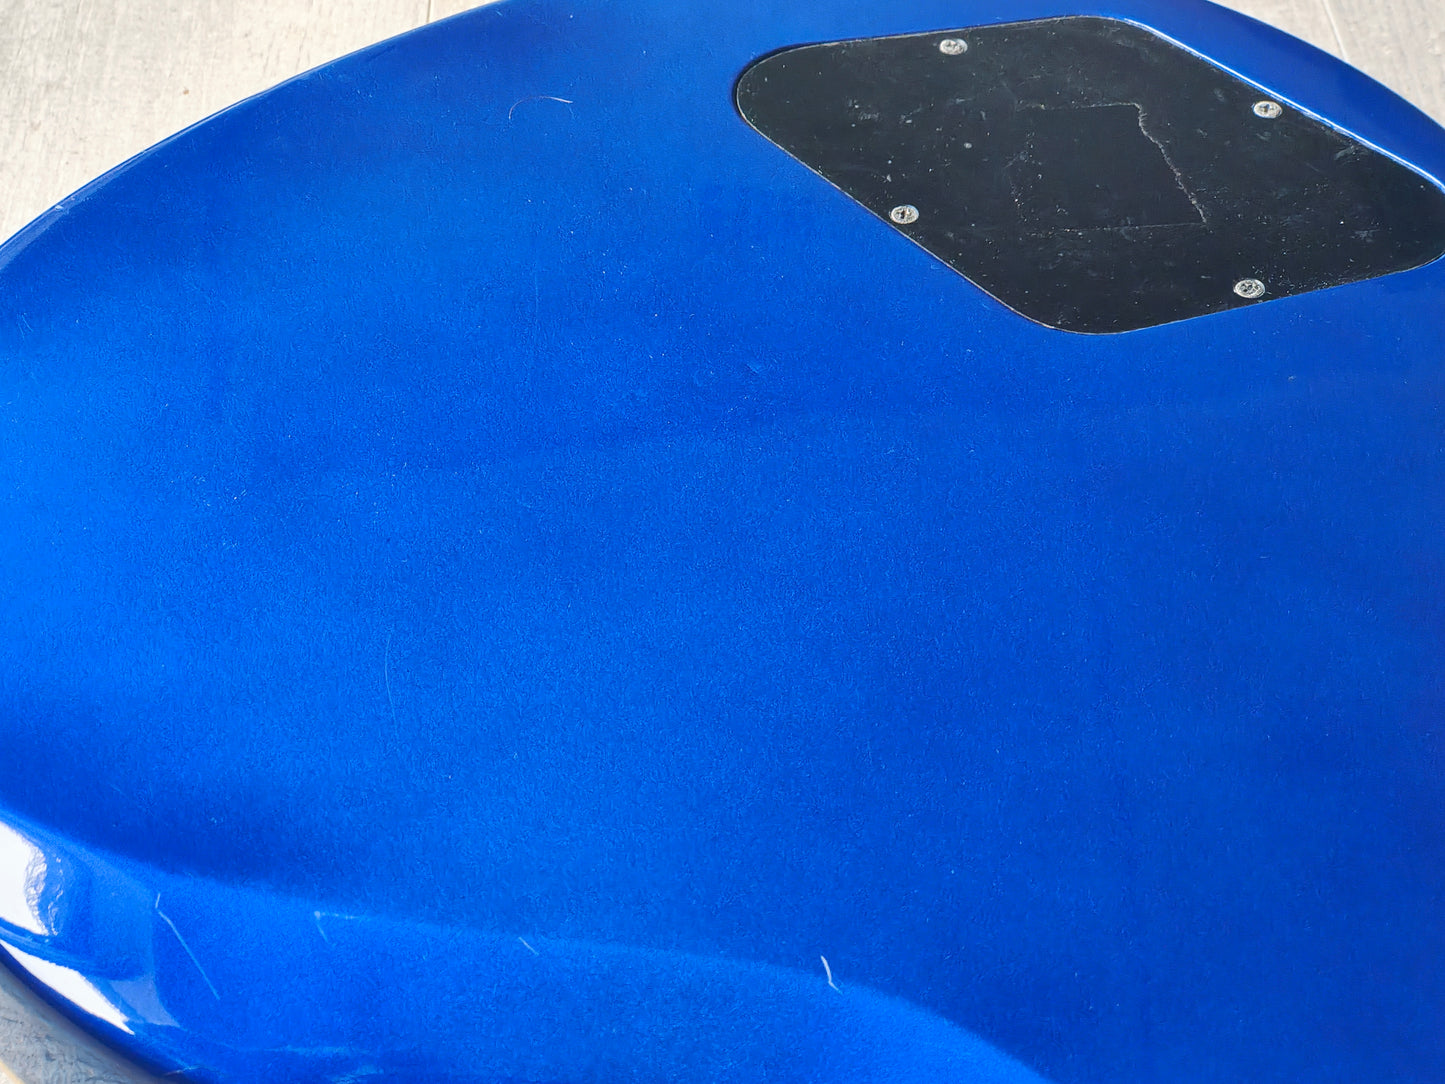 1997 Greco Japan LG-70 Eclipse Style Les Paul (Blue)